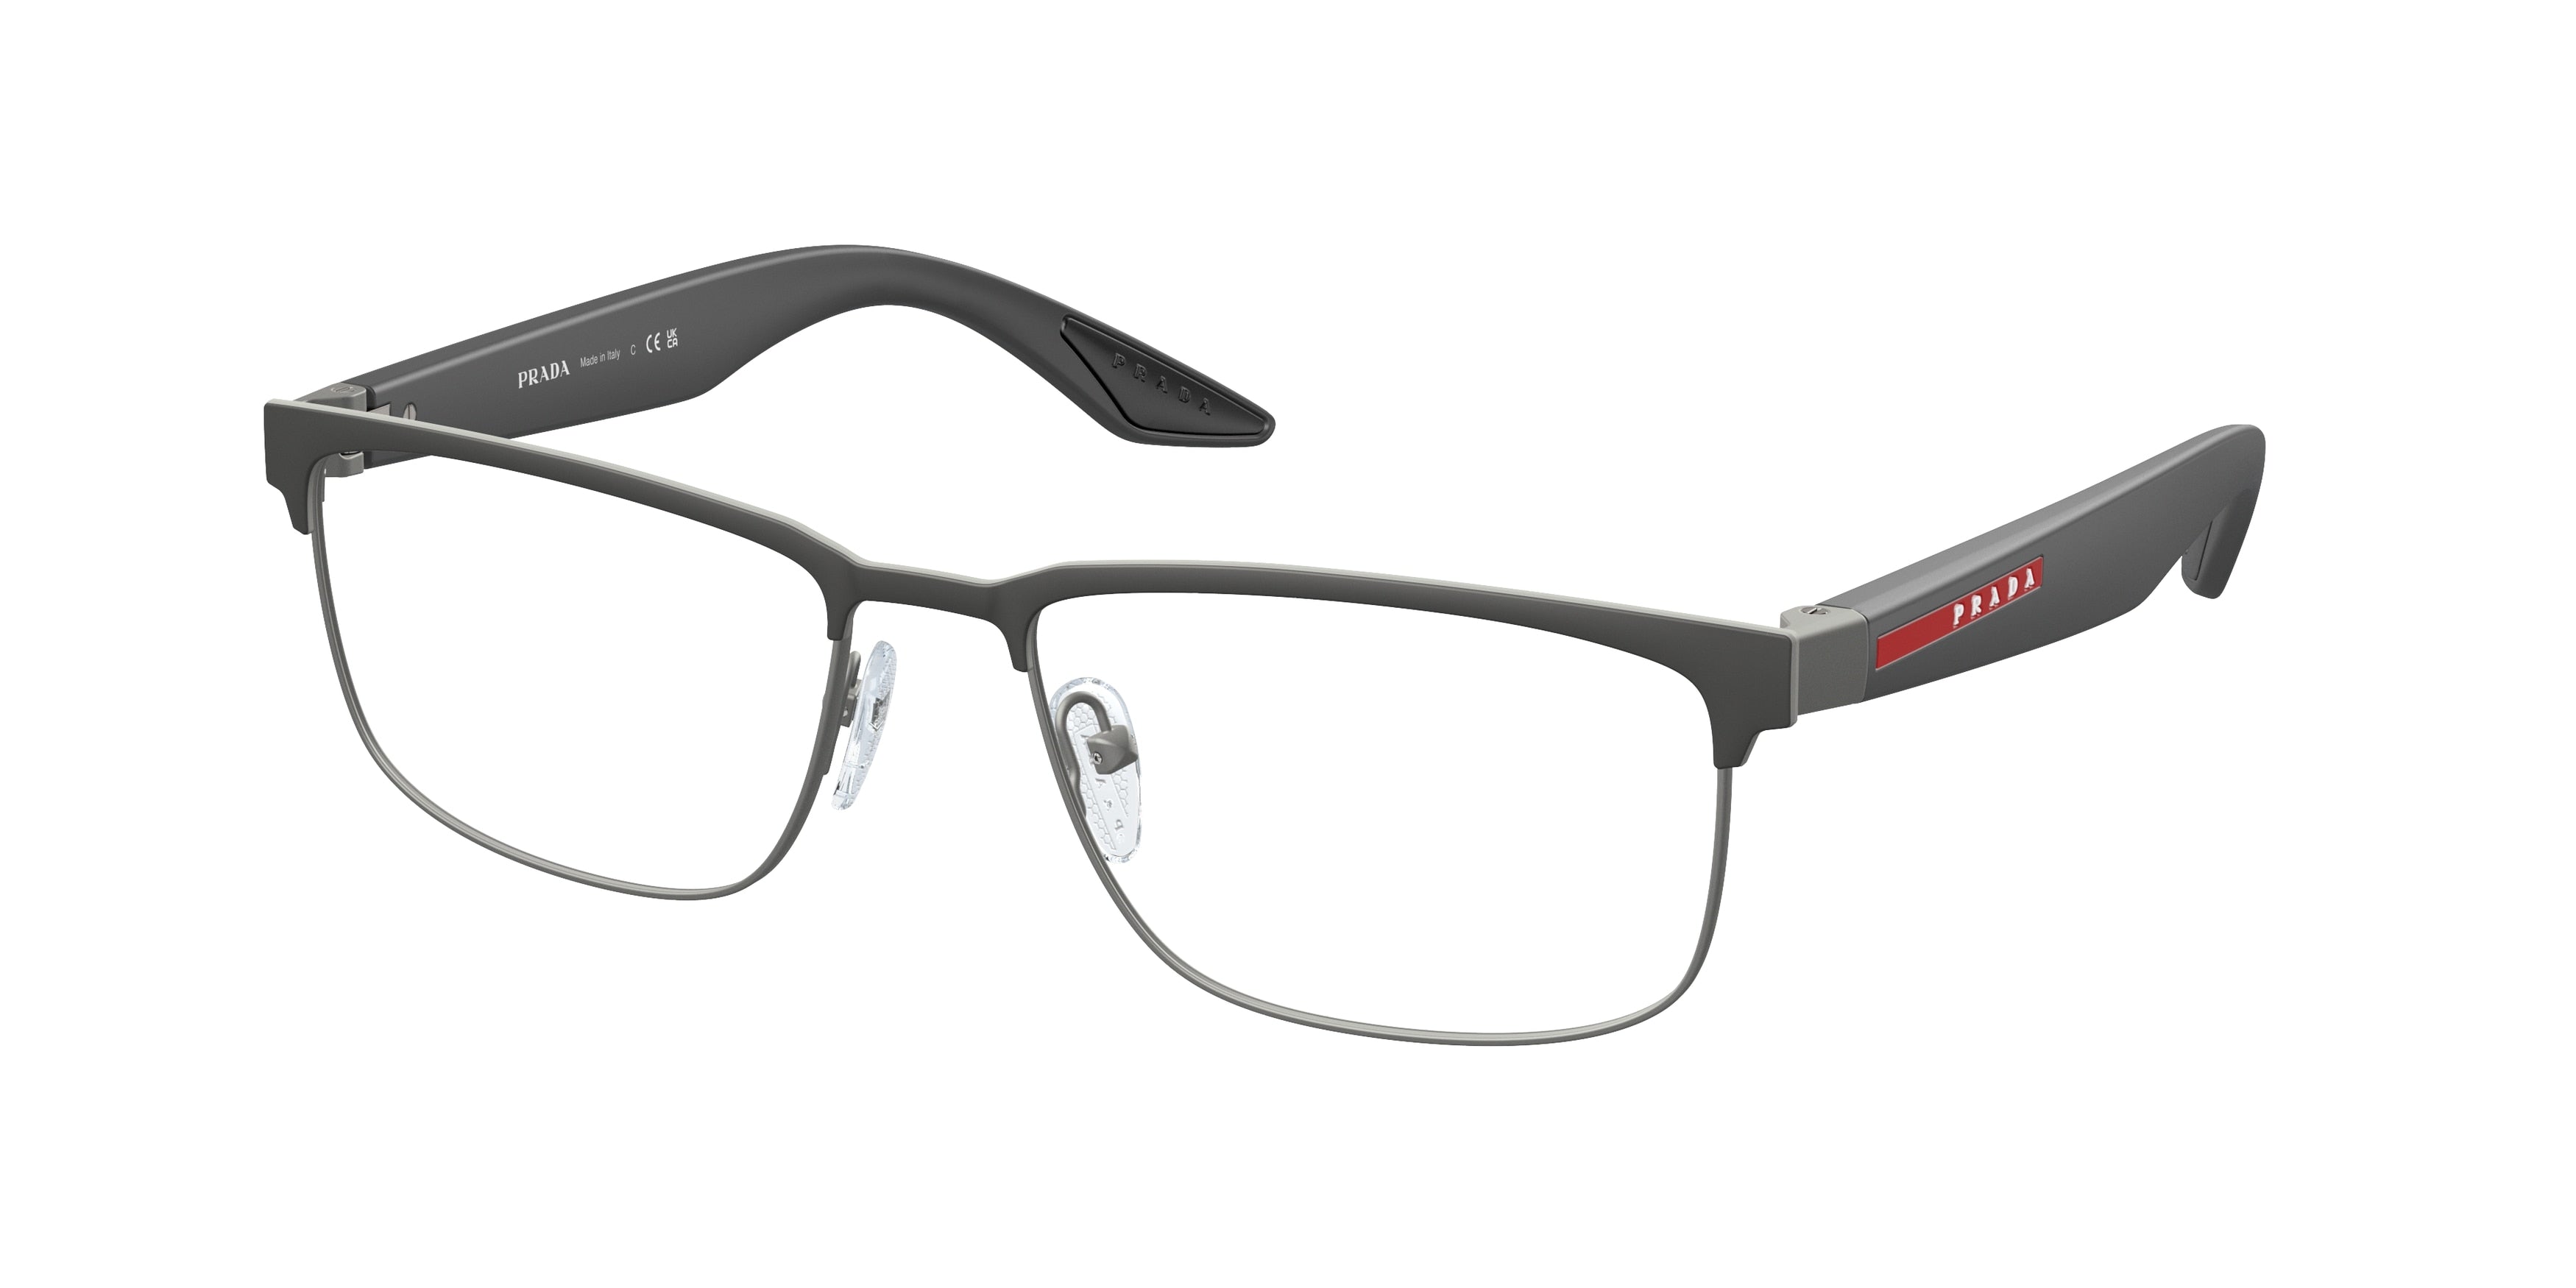 Prada Linea Rossa PS51PV Rectangle Eyeglasses  06P1O1-Grey Rubber 56-145-17 - Color Map Grey